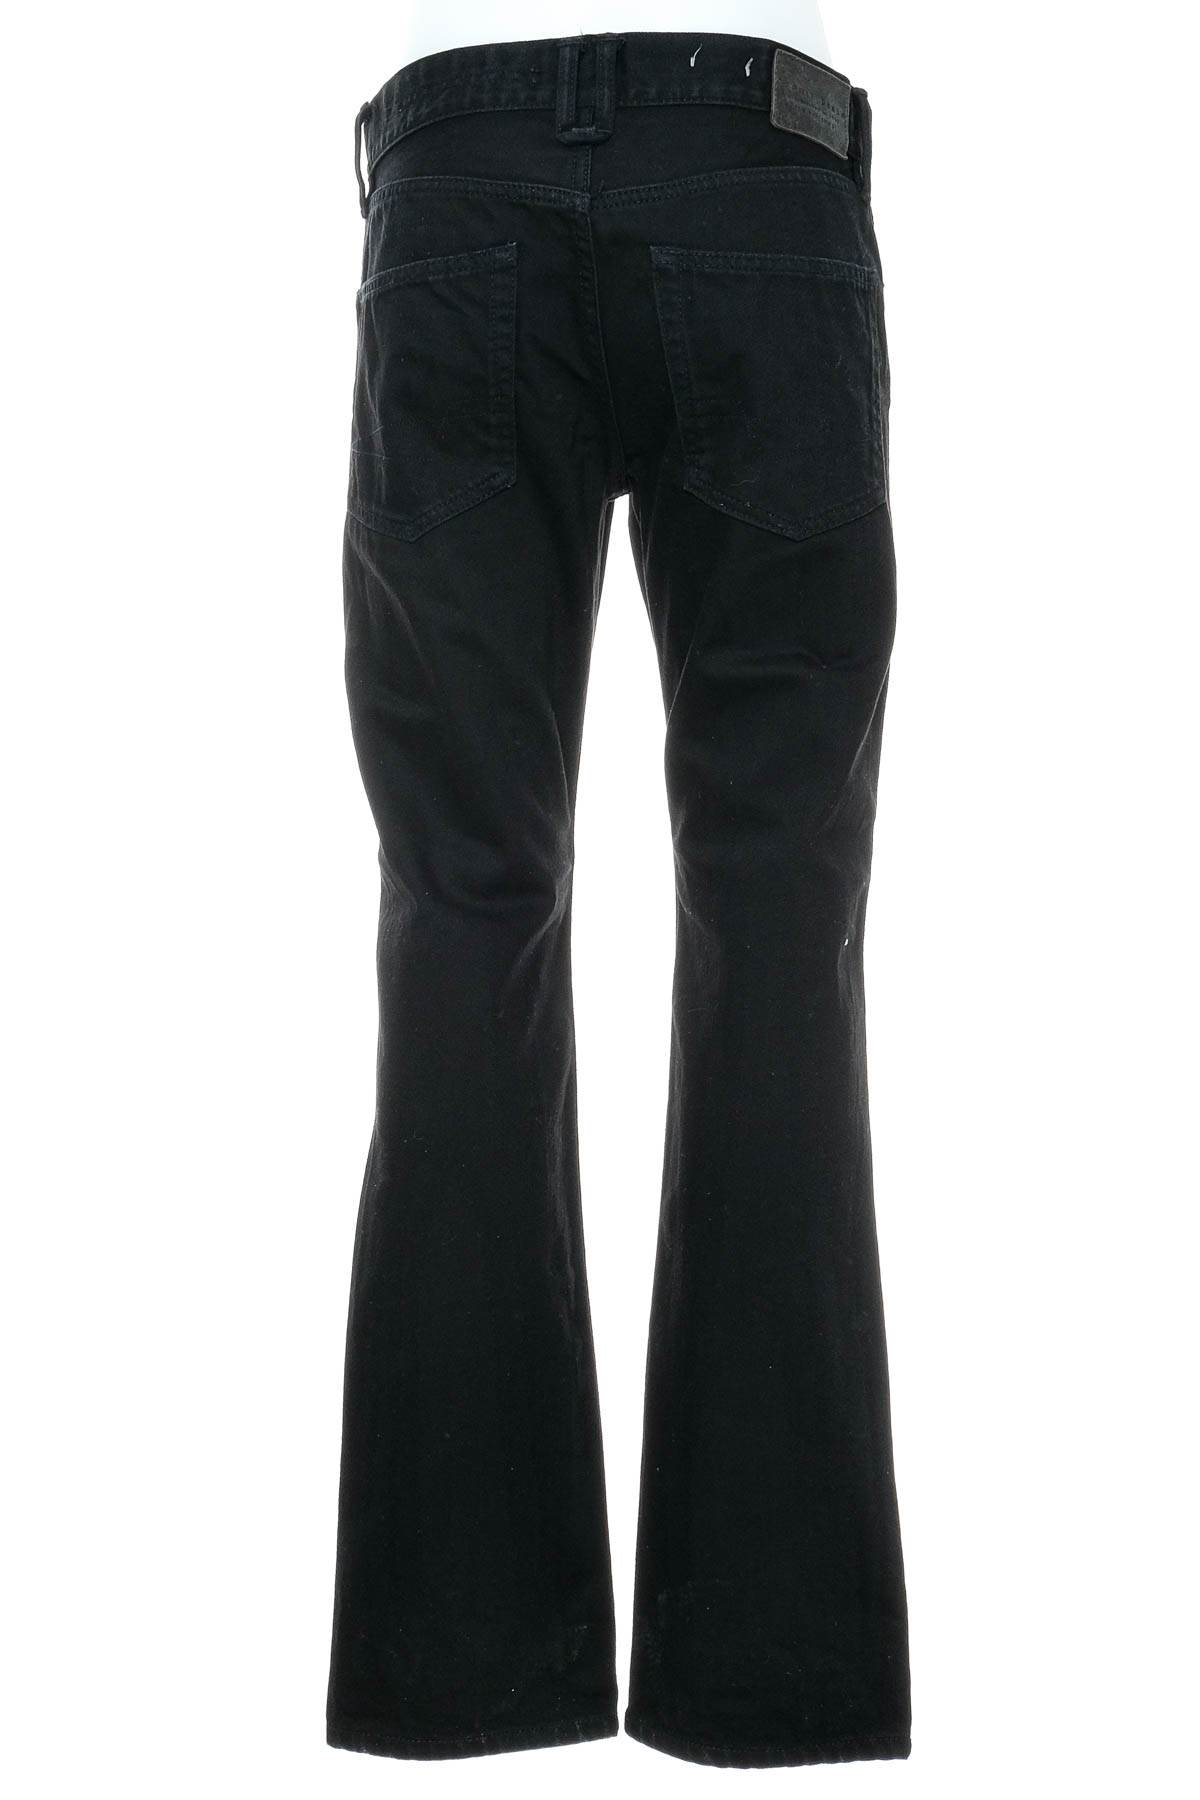 Men's jeans - ESPRIT Denim - 1